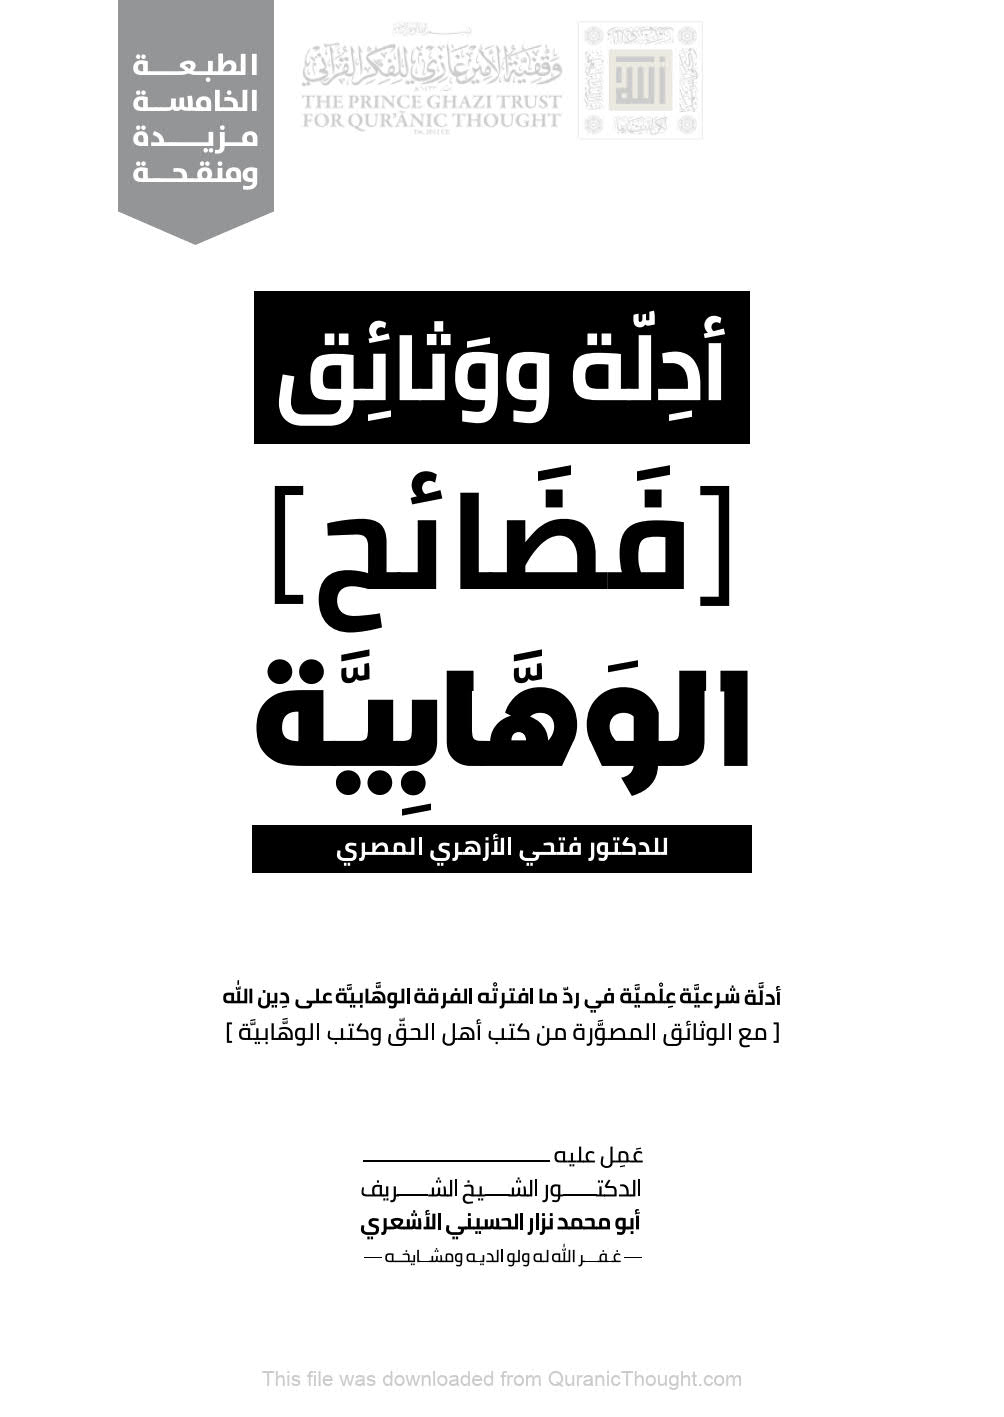 أدلة ووثائق فضائح الوهابية للدكتور فتحي الأزهري المصري ( الطبعة الخامسة _ 2020م )